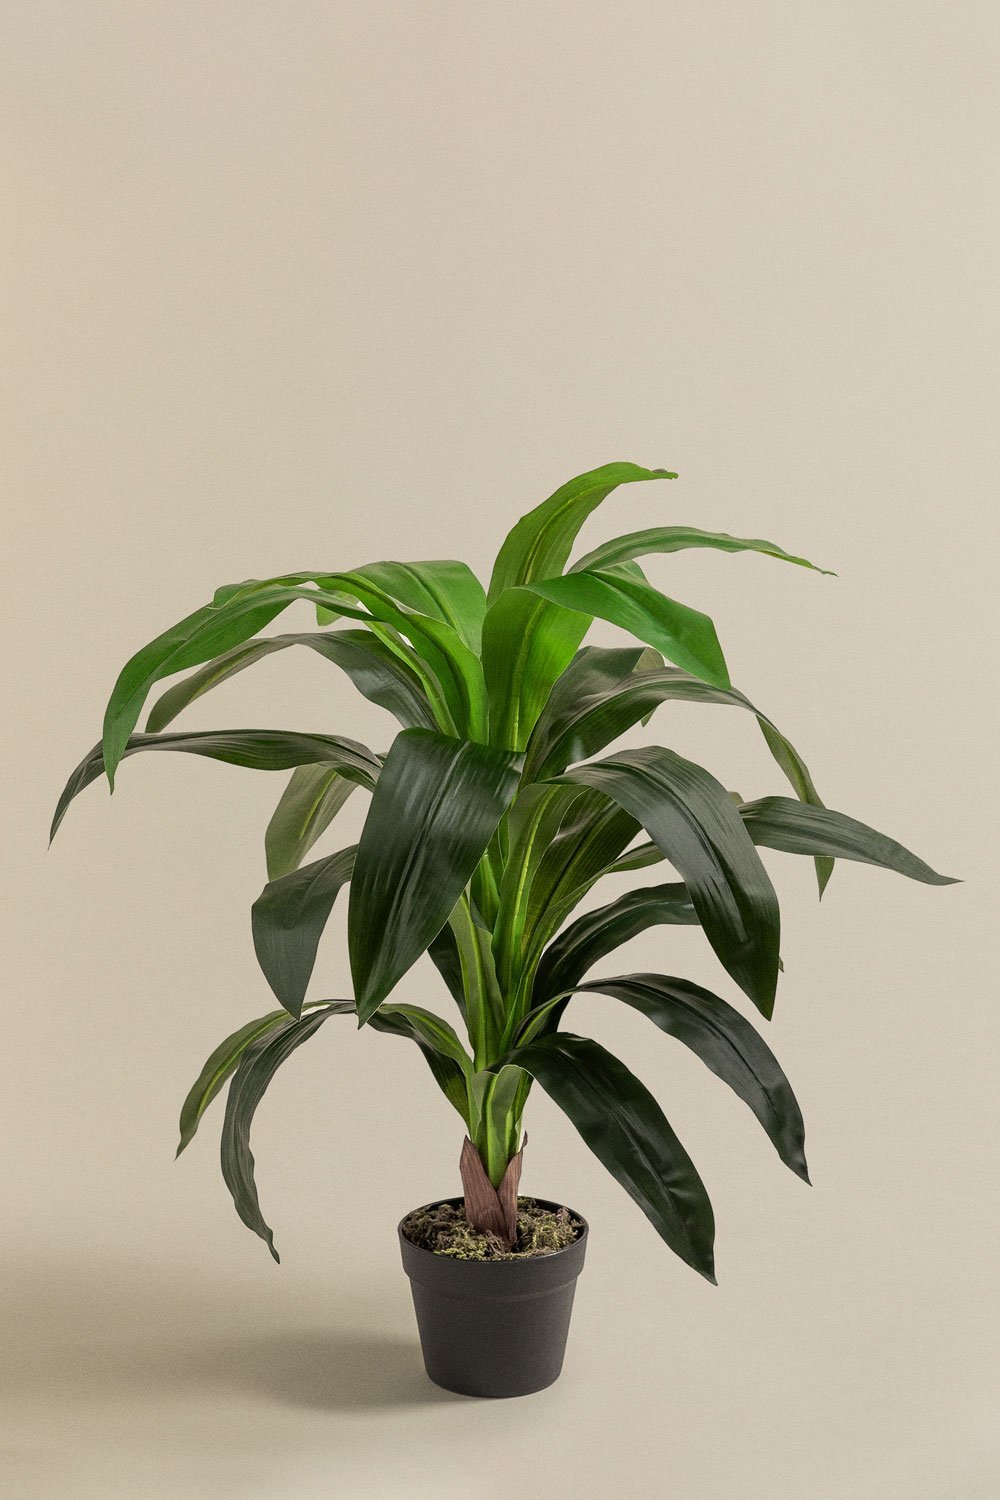 Dekoracyjna sztuczna roślina Dracanea, obrazek w galerii 1